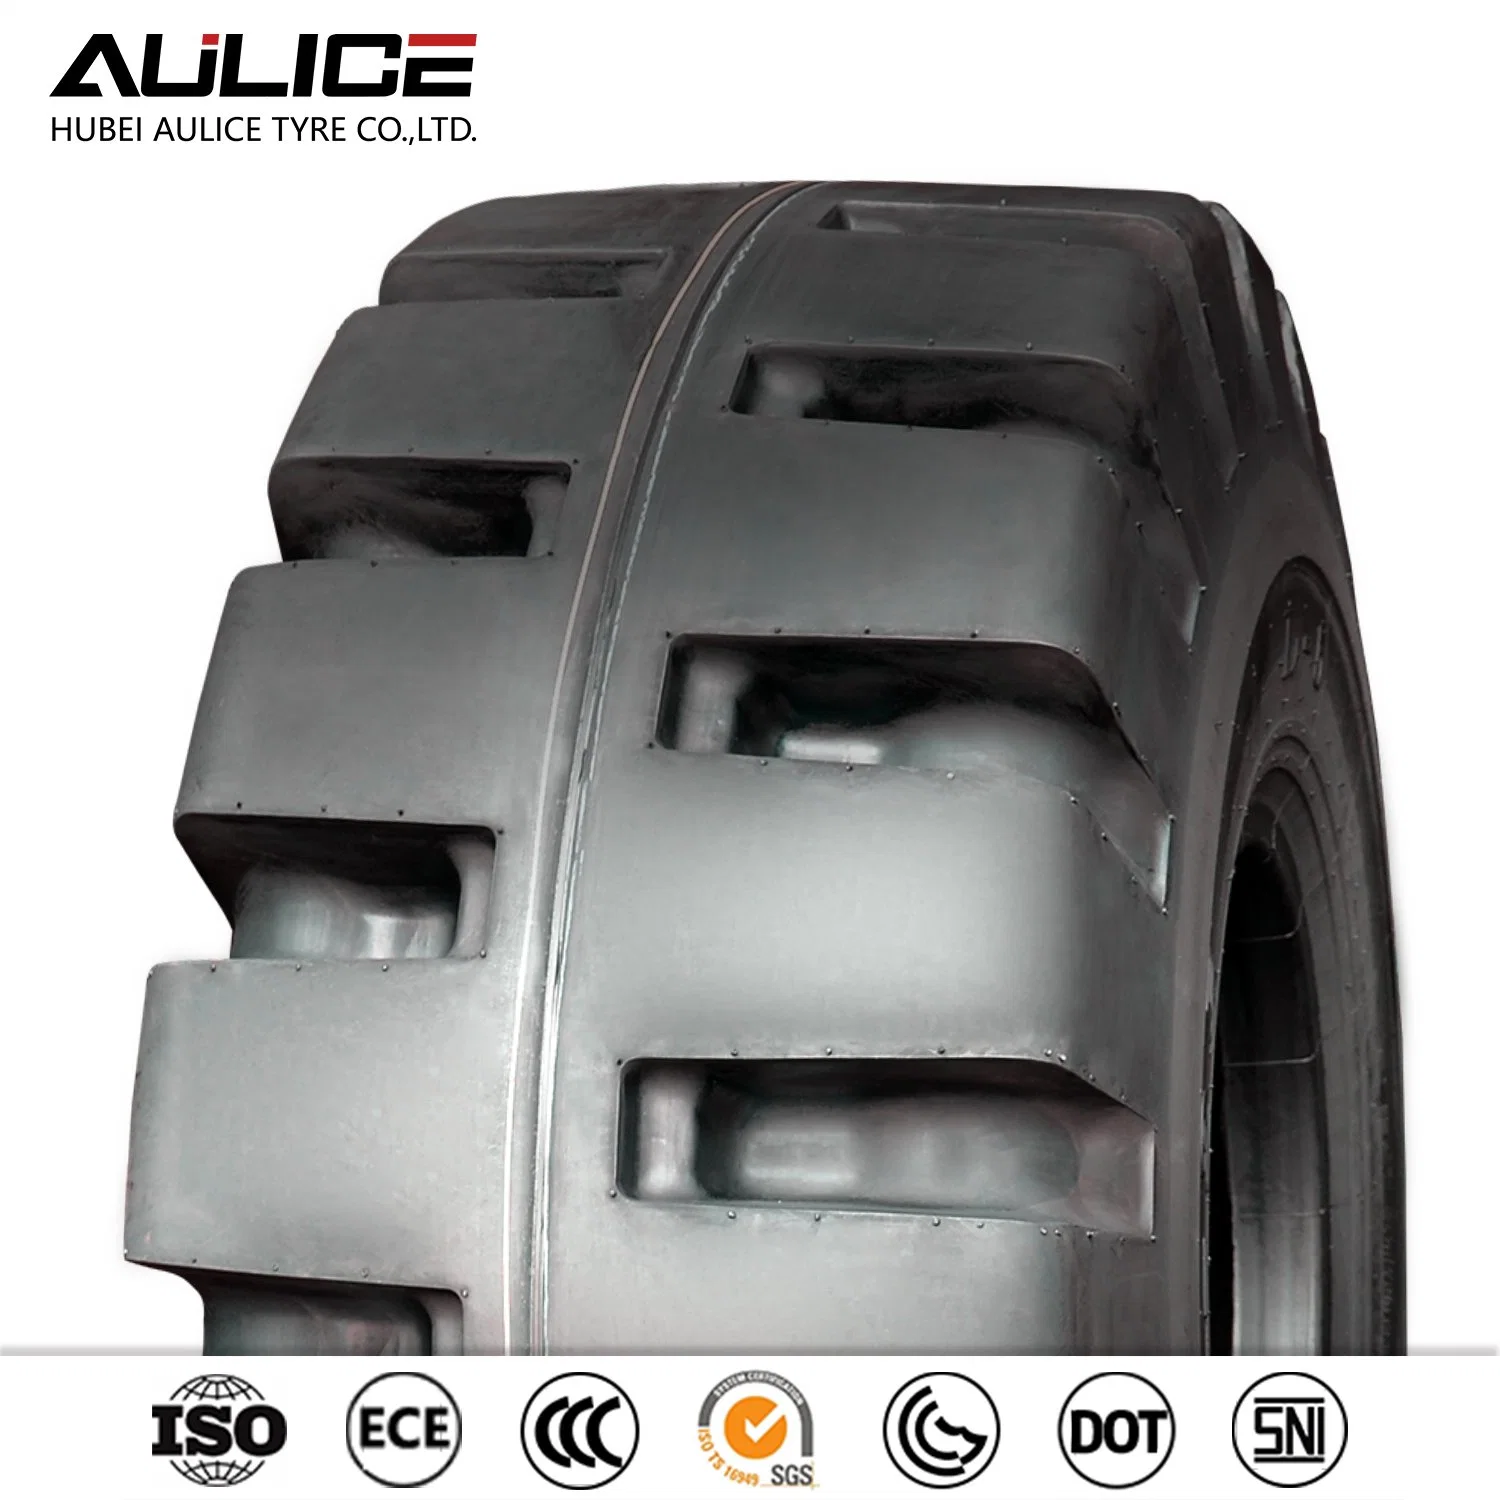 Шины с диагональным кордом марки Aulice L-5 23.5-25 OTR шины внедорожные Шины Строительные шины Горные шины Продать